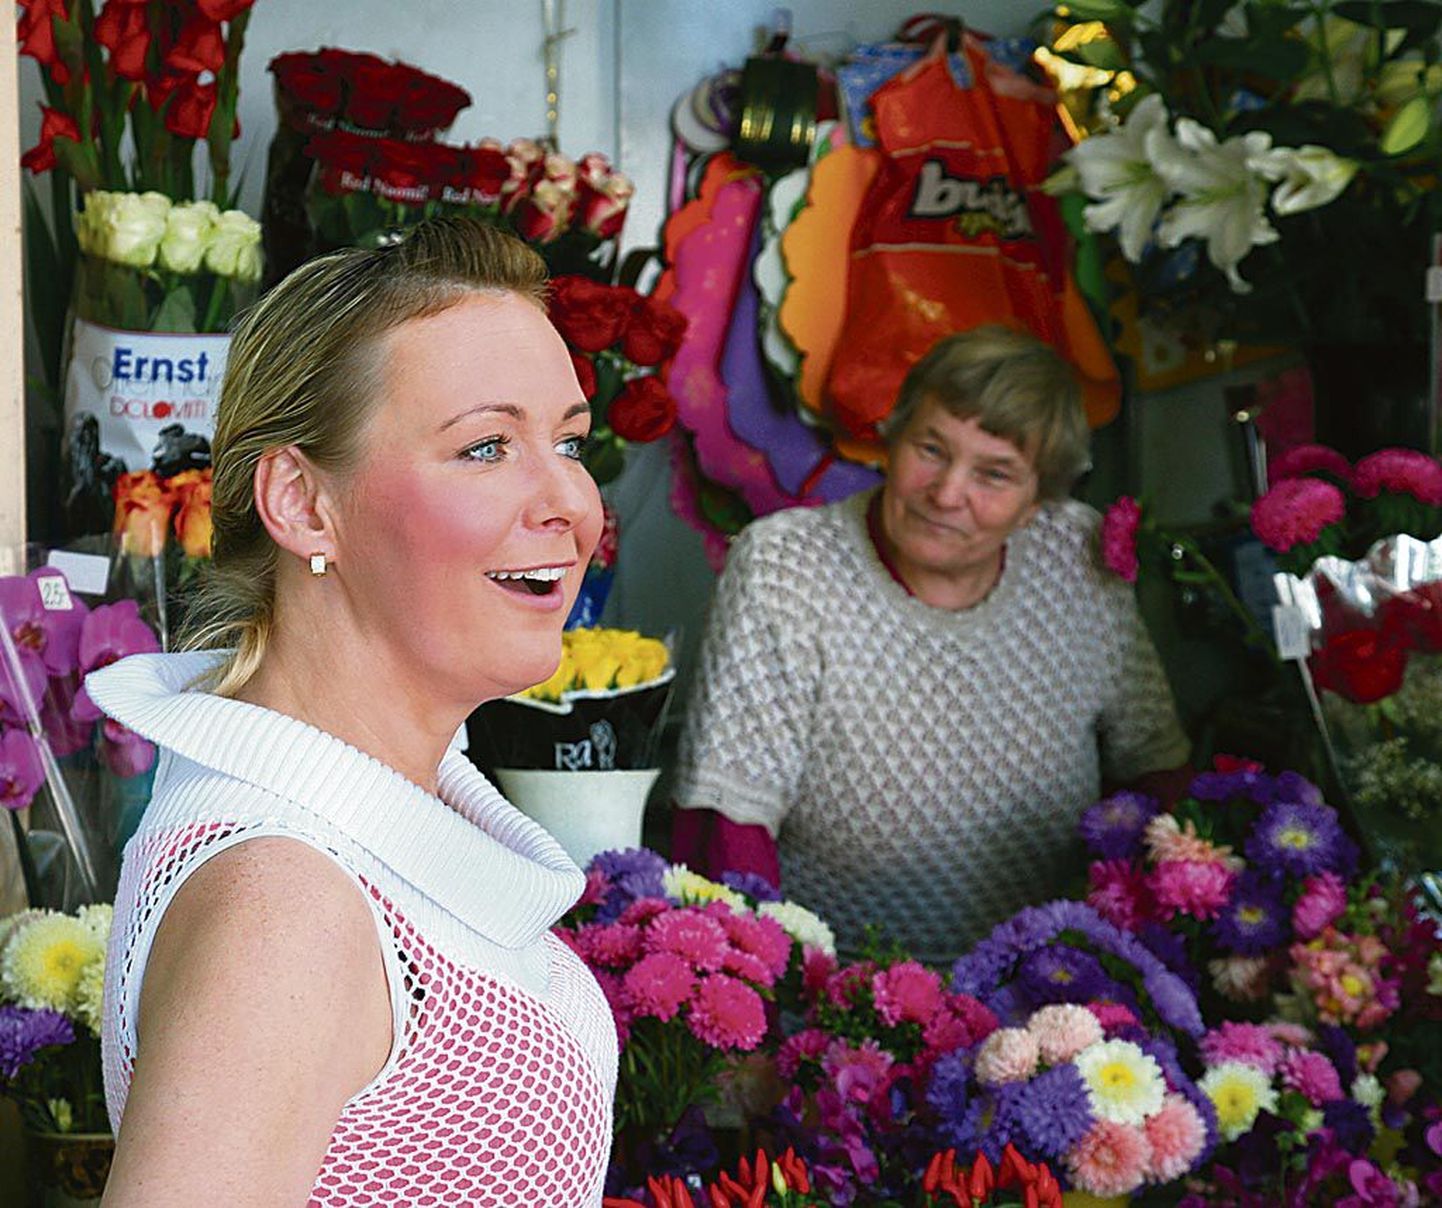 Kioskitäiest lilledest lahti saanud Arno oli niisama õnnelik kui üleöö lilleaia kuningannaks kroonitud Kristi Vesselov.